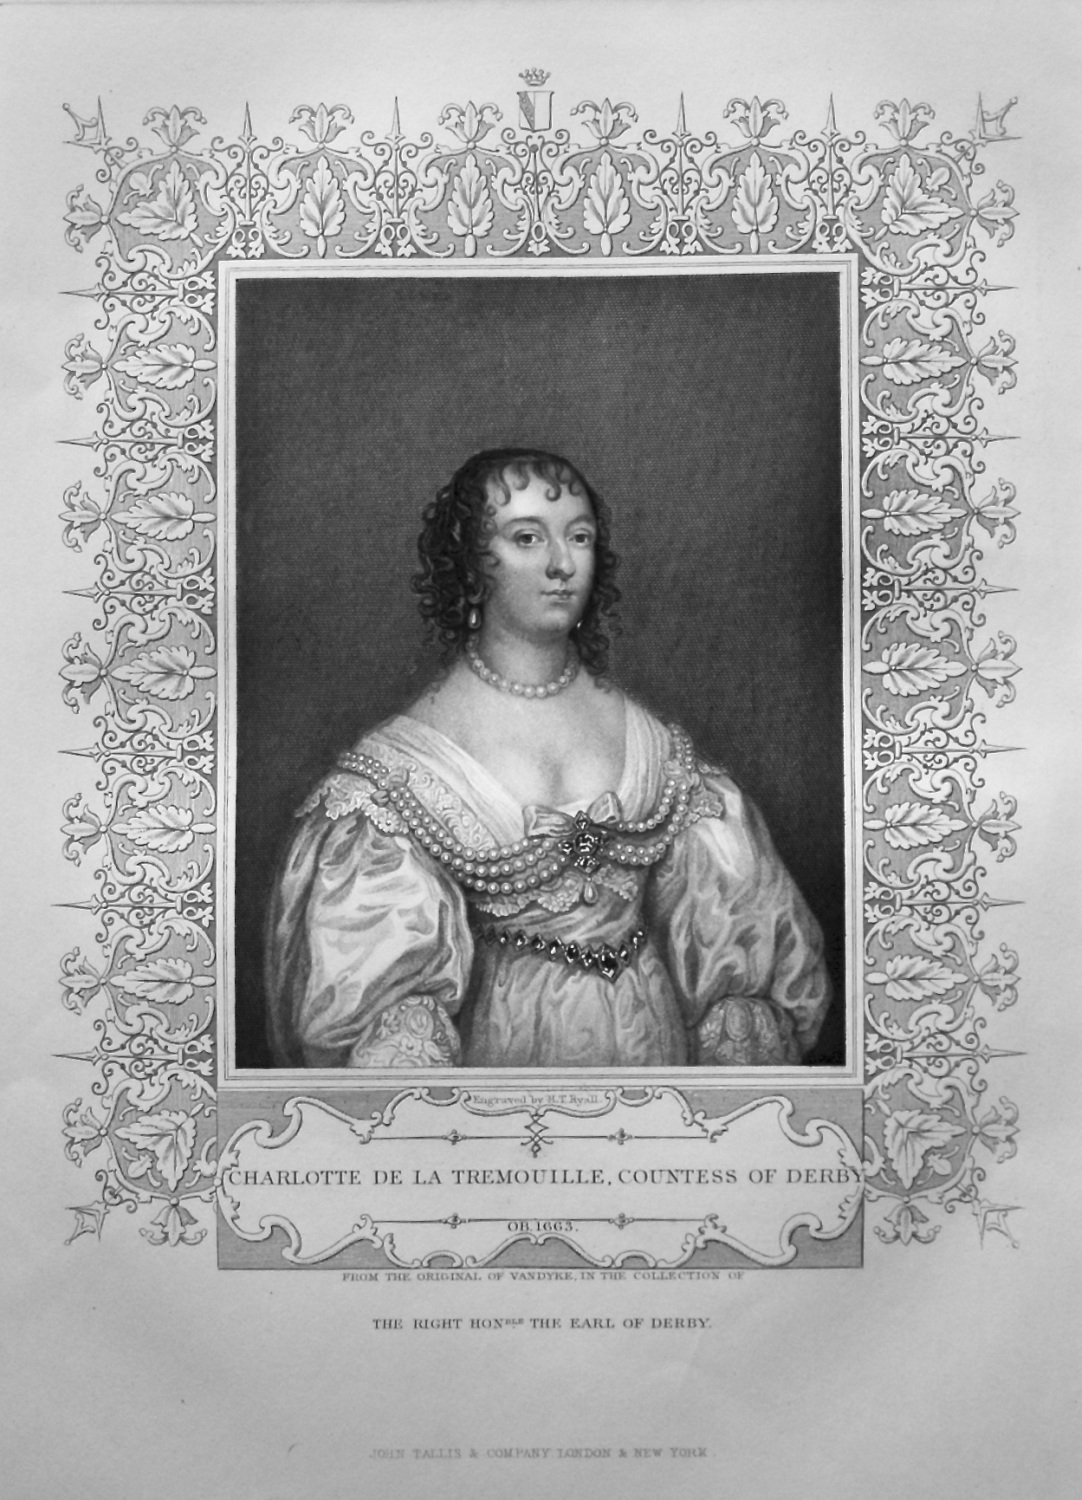 Charlotte De La Tremouille, Countess of Derby.  OB. 1663.  From the origina